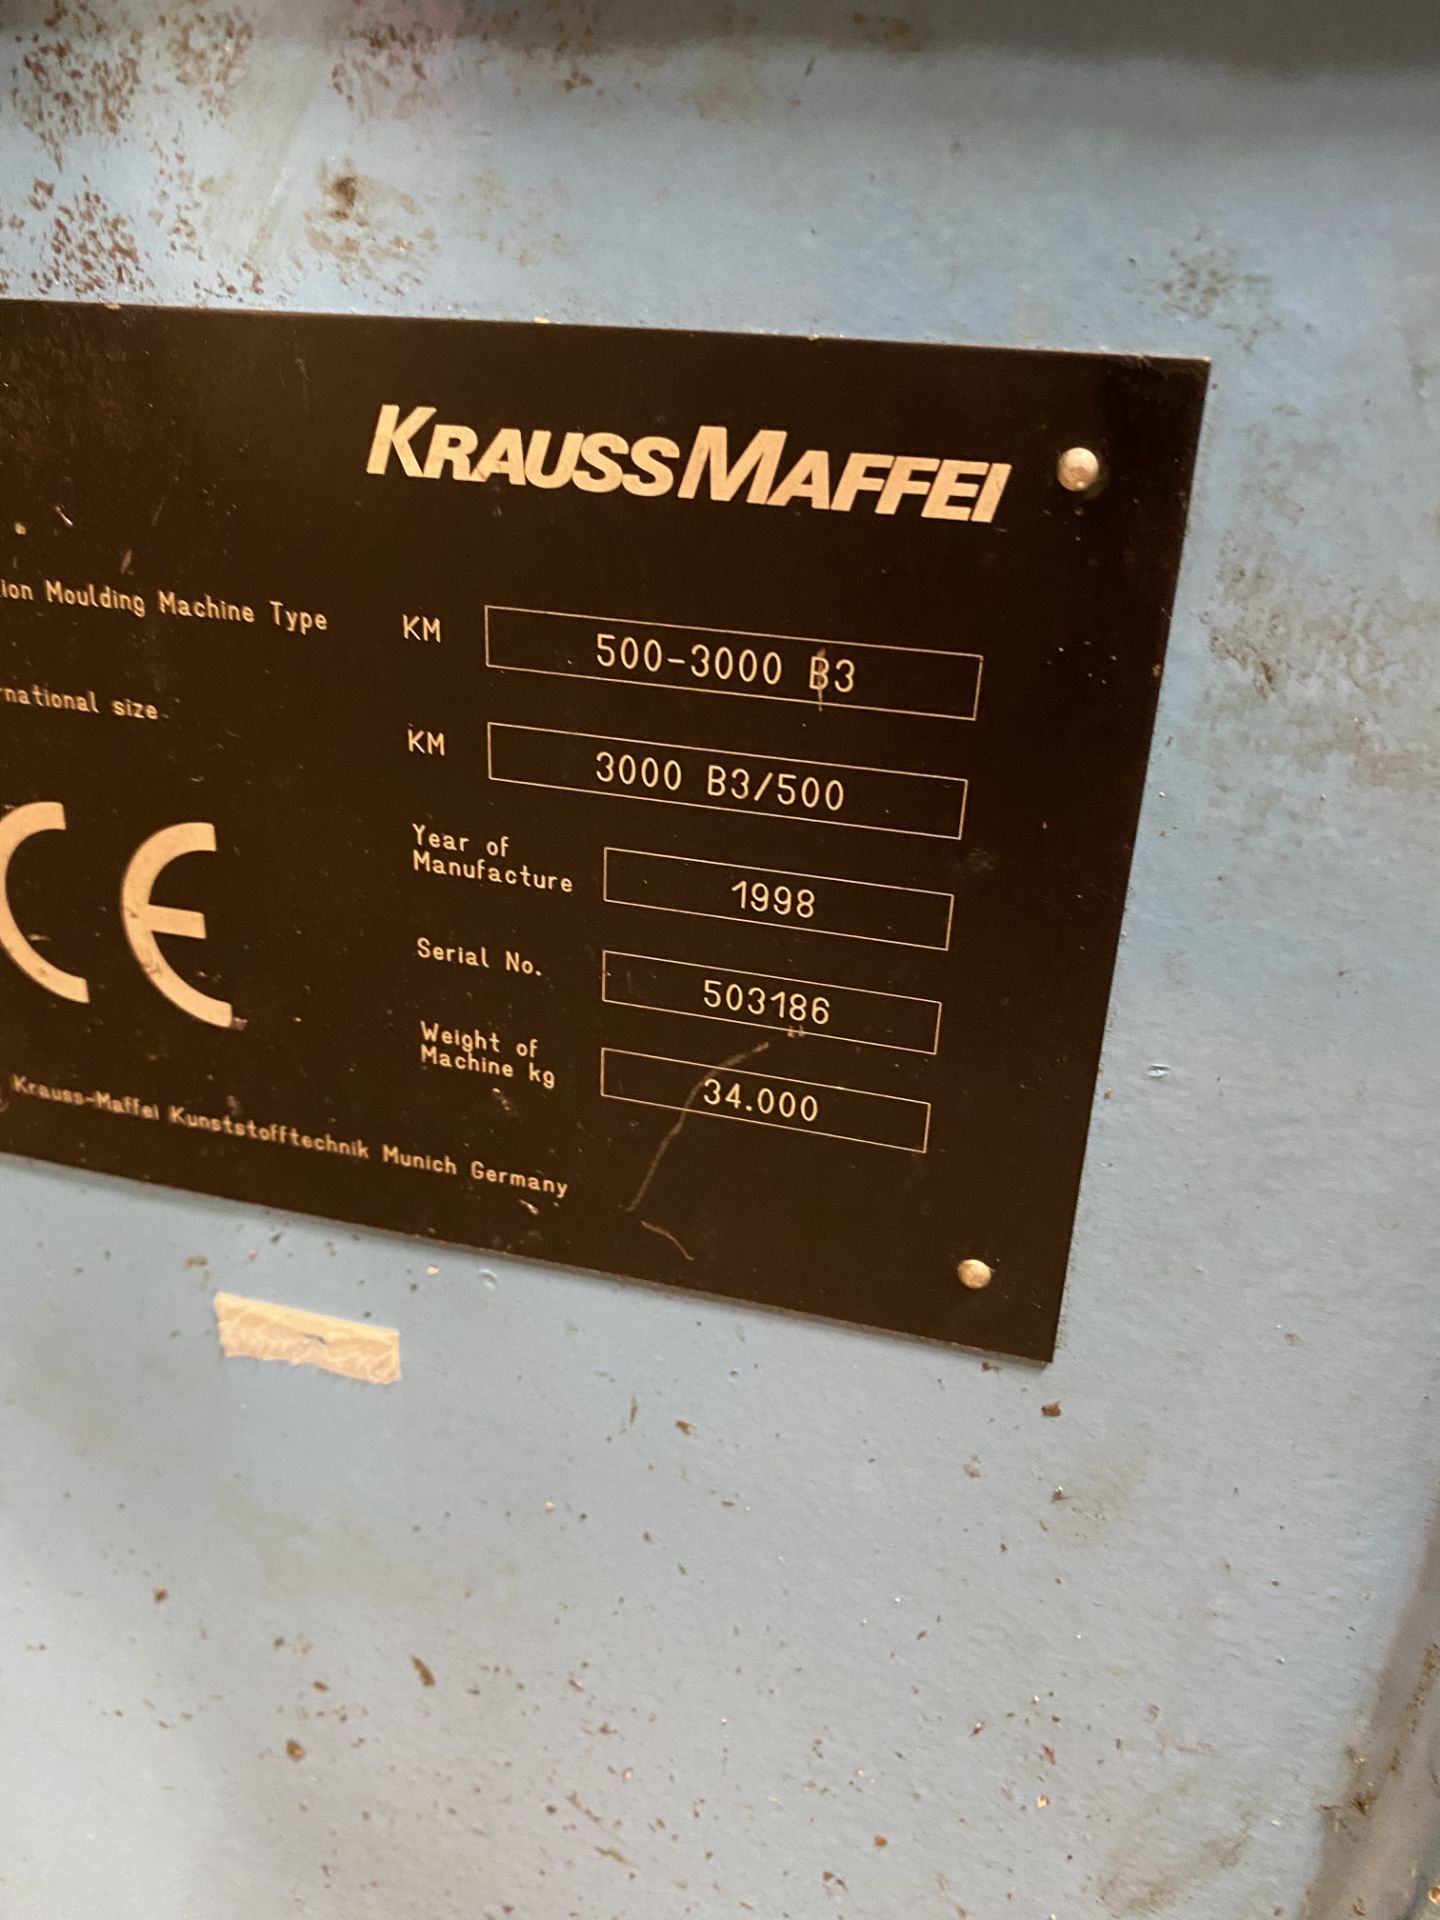 Krauss Maffei 550 Ton Injection Molding Machine 500-3000 B3 1998 - Image 4 of 9